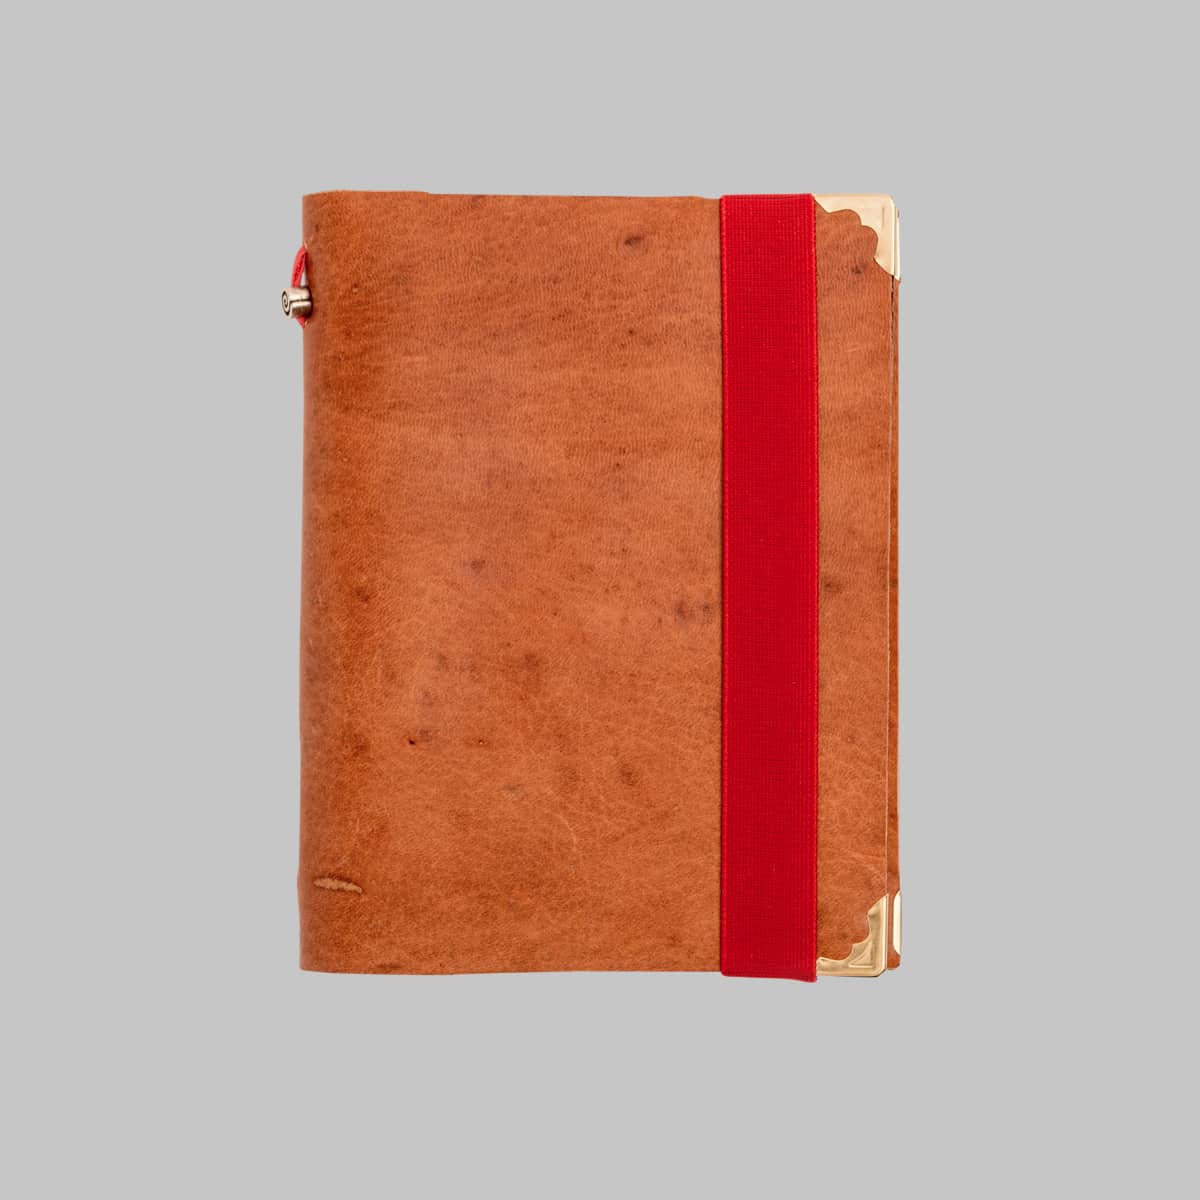 Cuaderno de Piel - minimal life